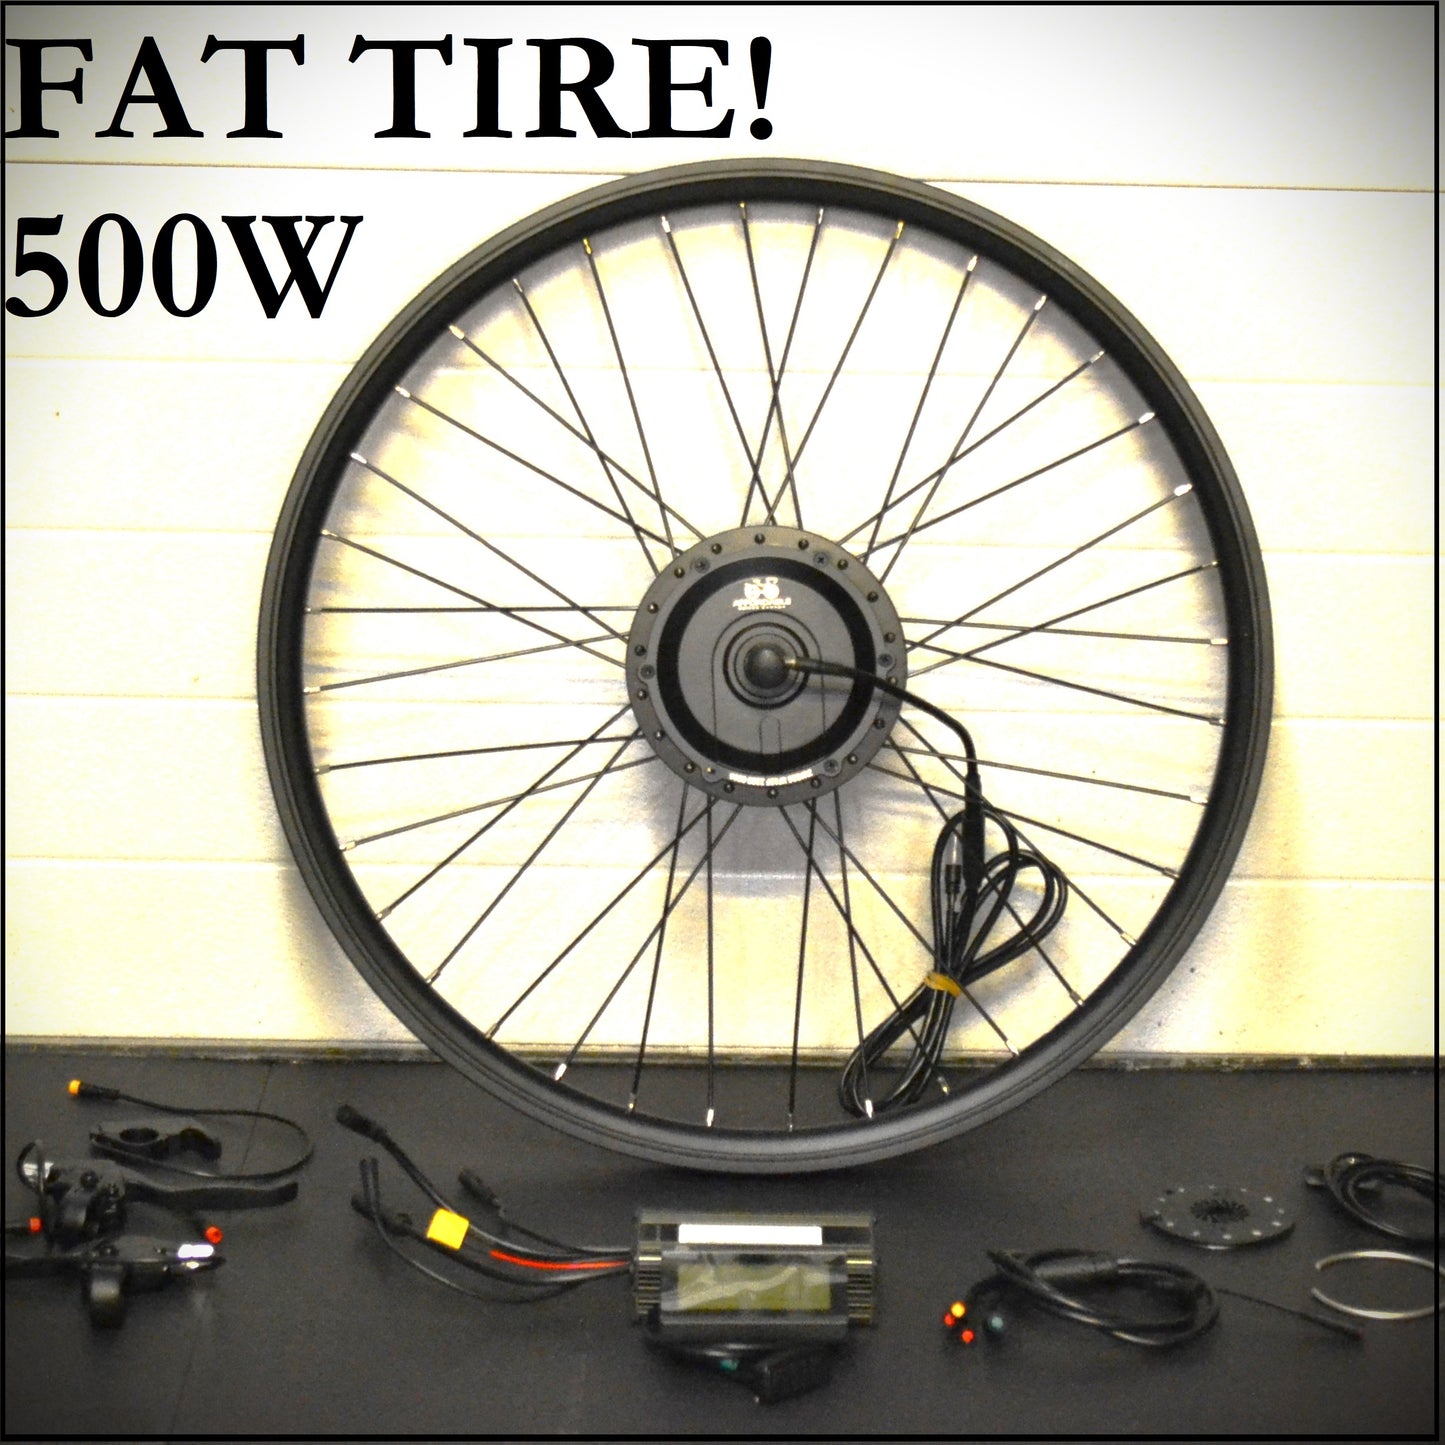 FAT Front 500W Geared Hub Motor Kit